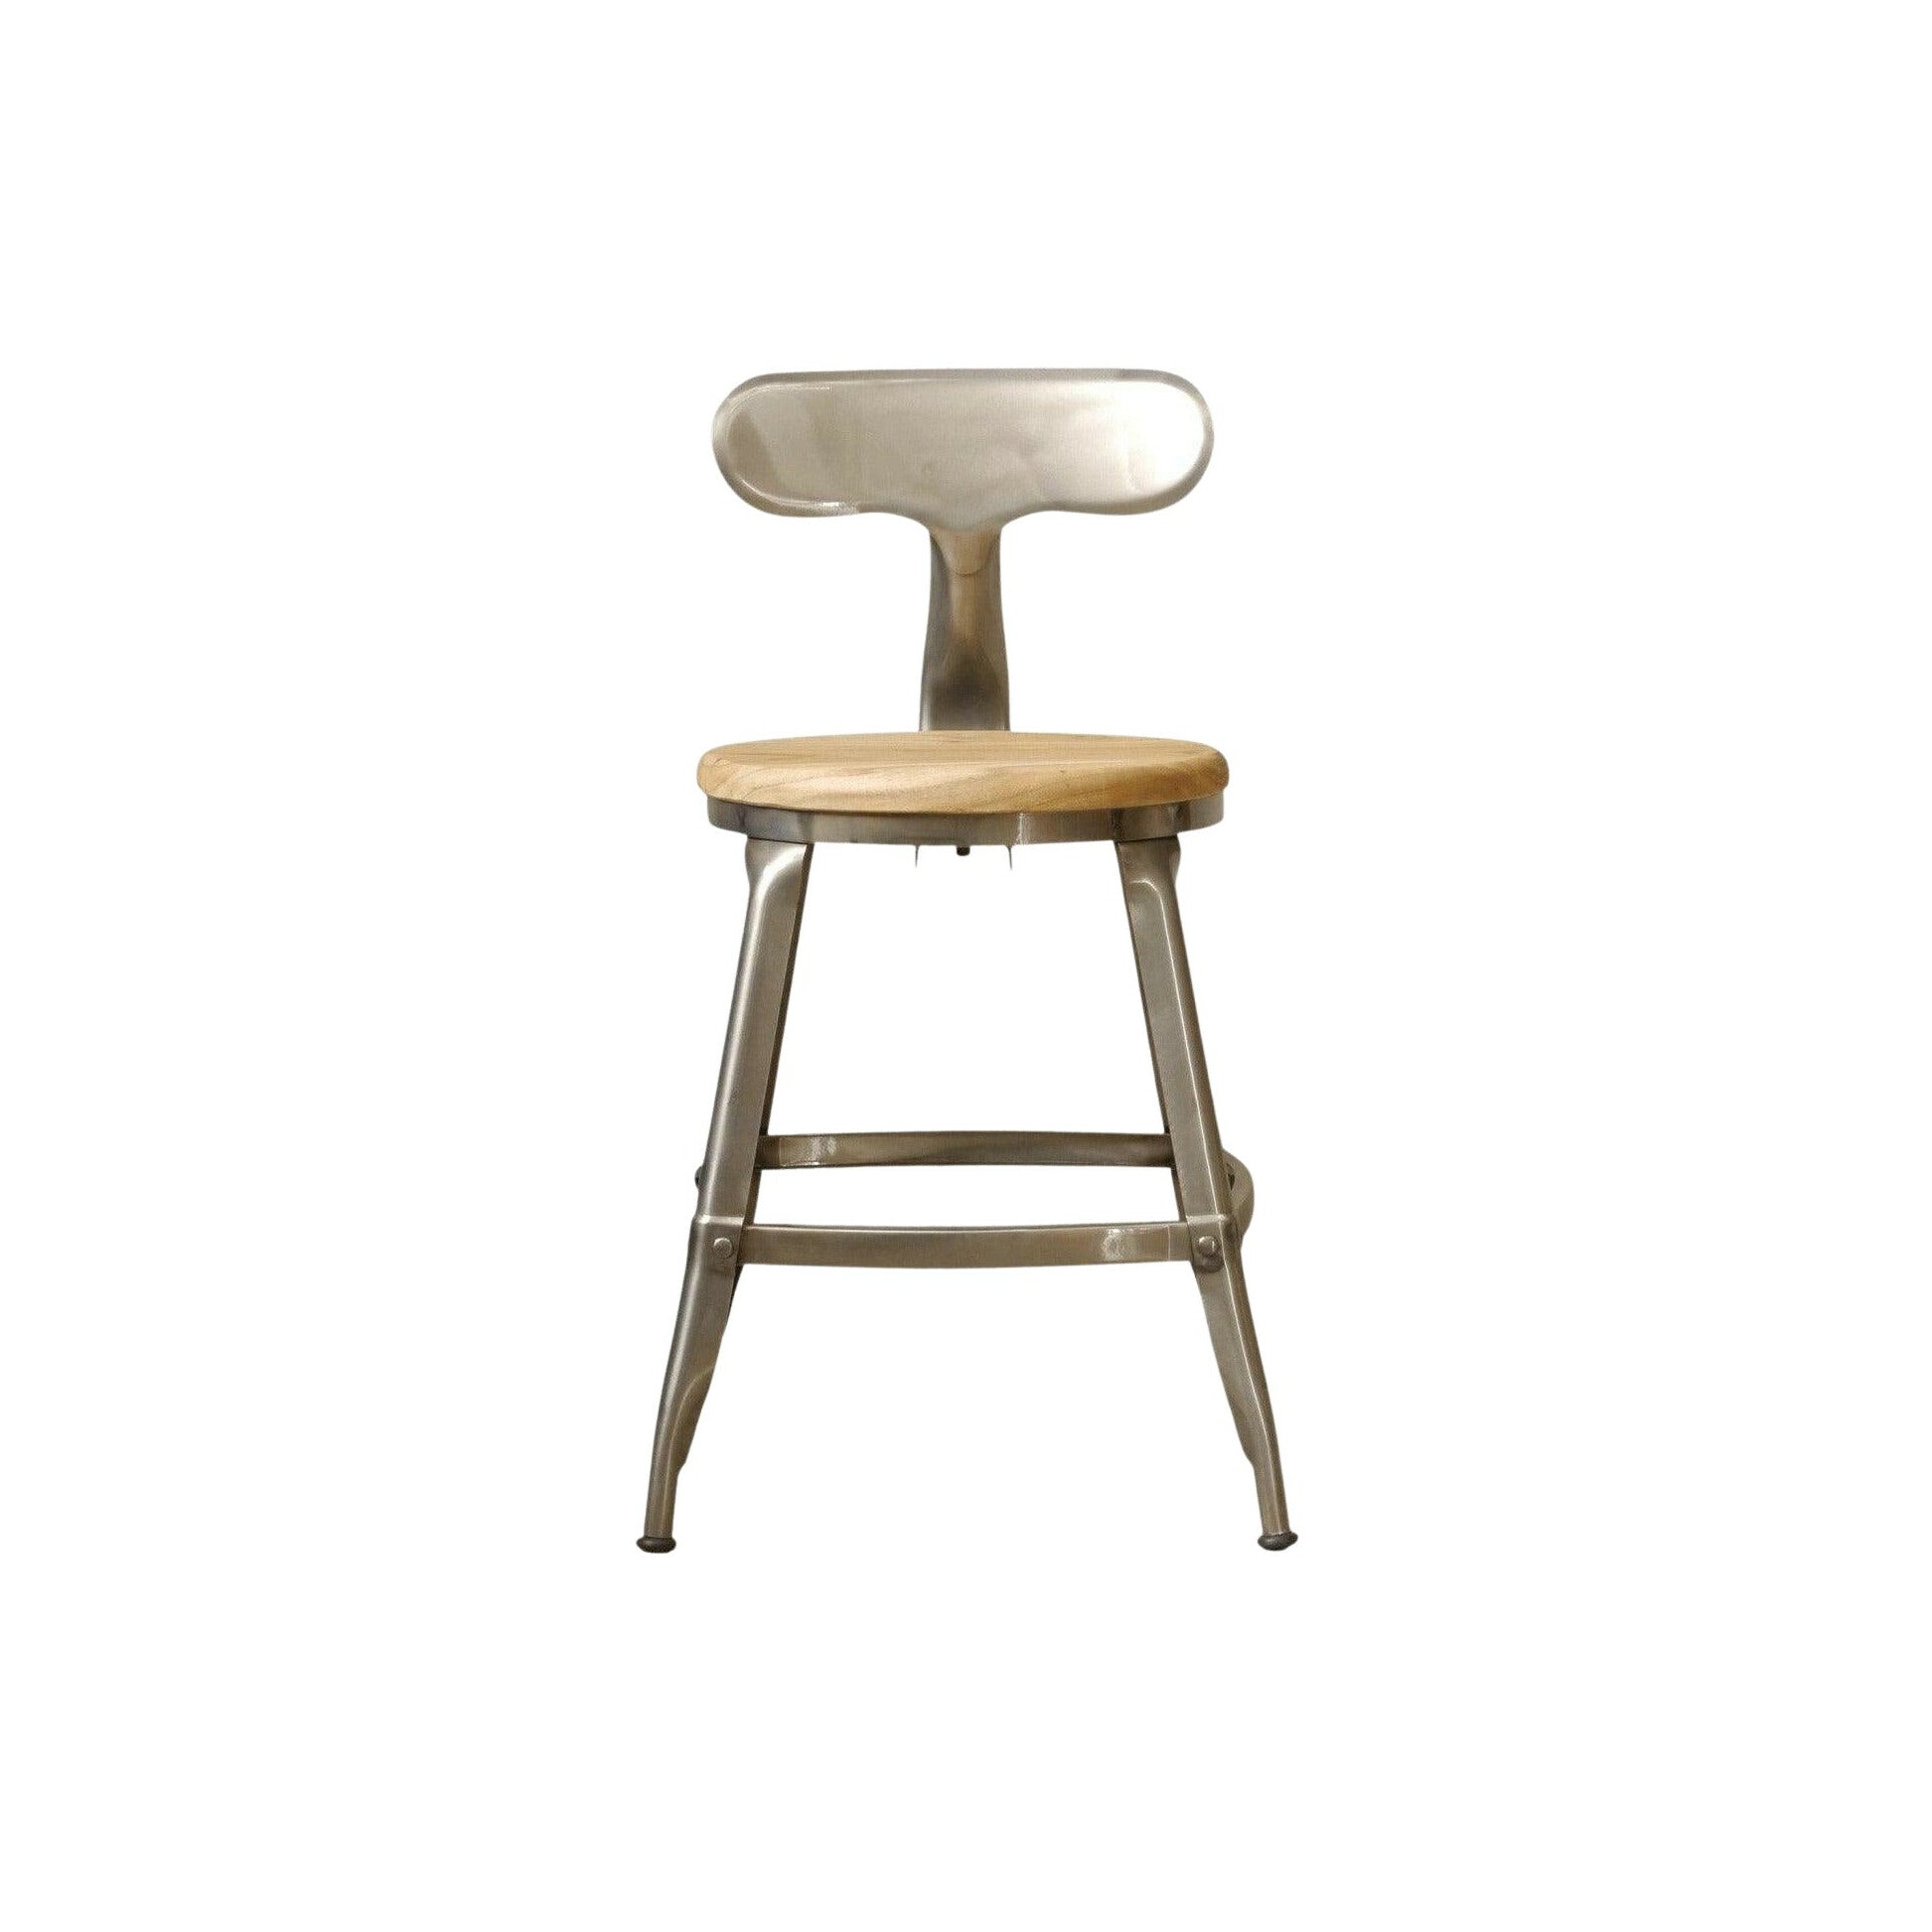 デザイナーズチェアDesign chair 1281GART ガルトkaguaroo